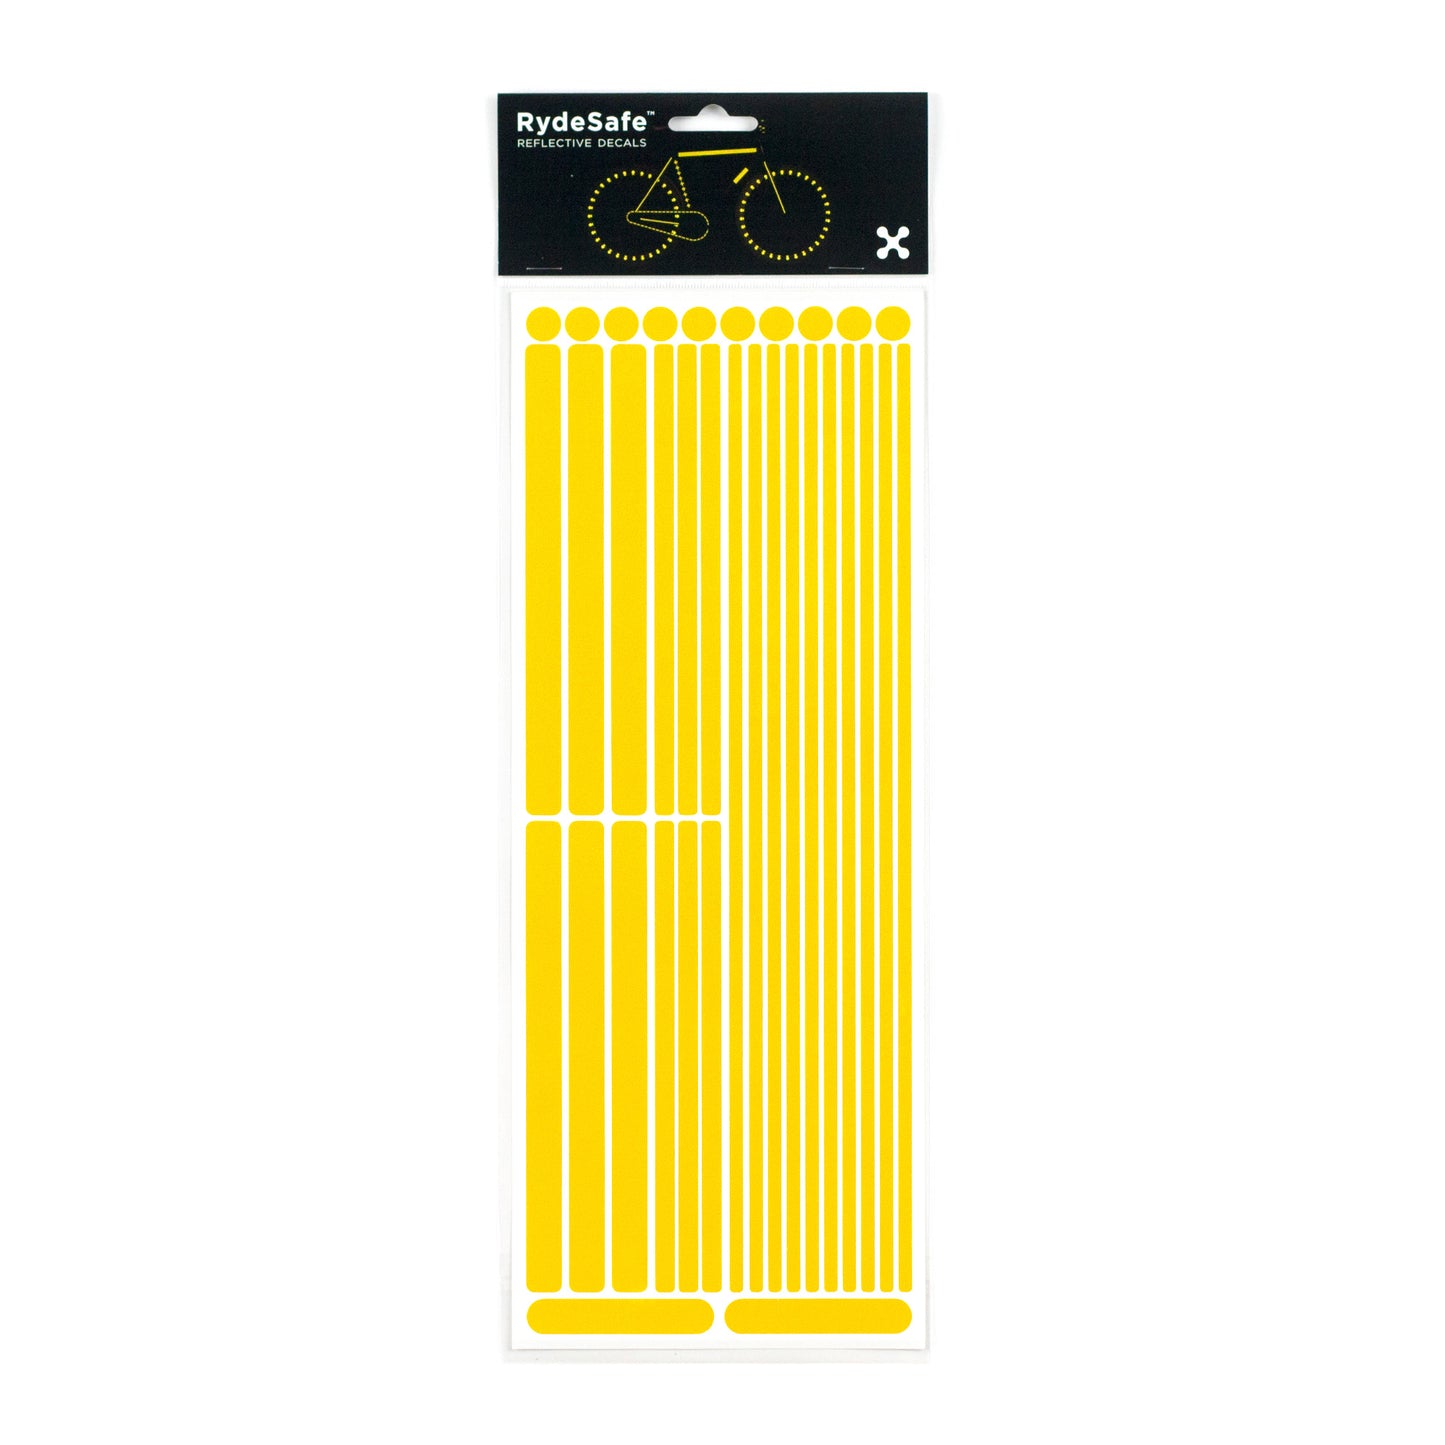 RydeSafe Reflective Stickers Multi-Shape Kit - Yellow